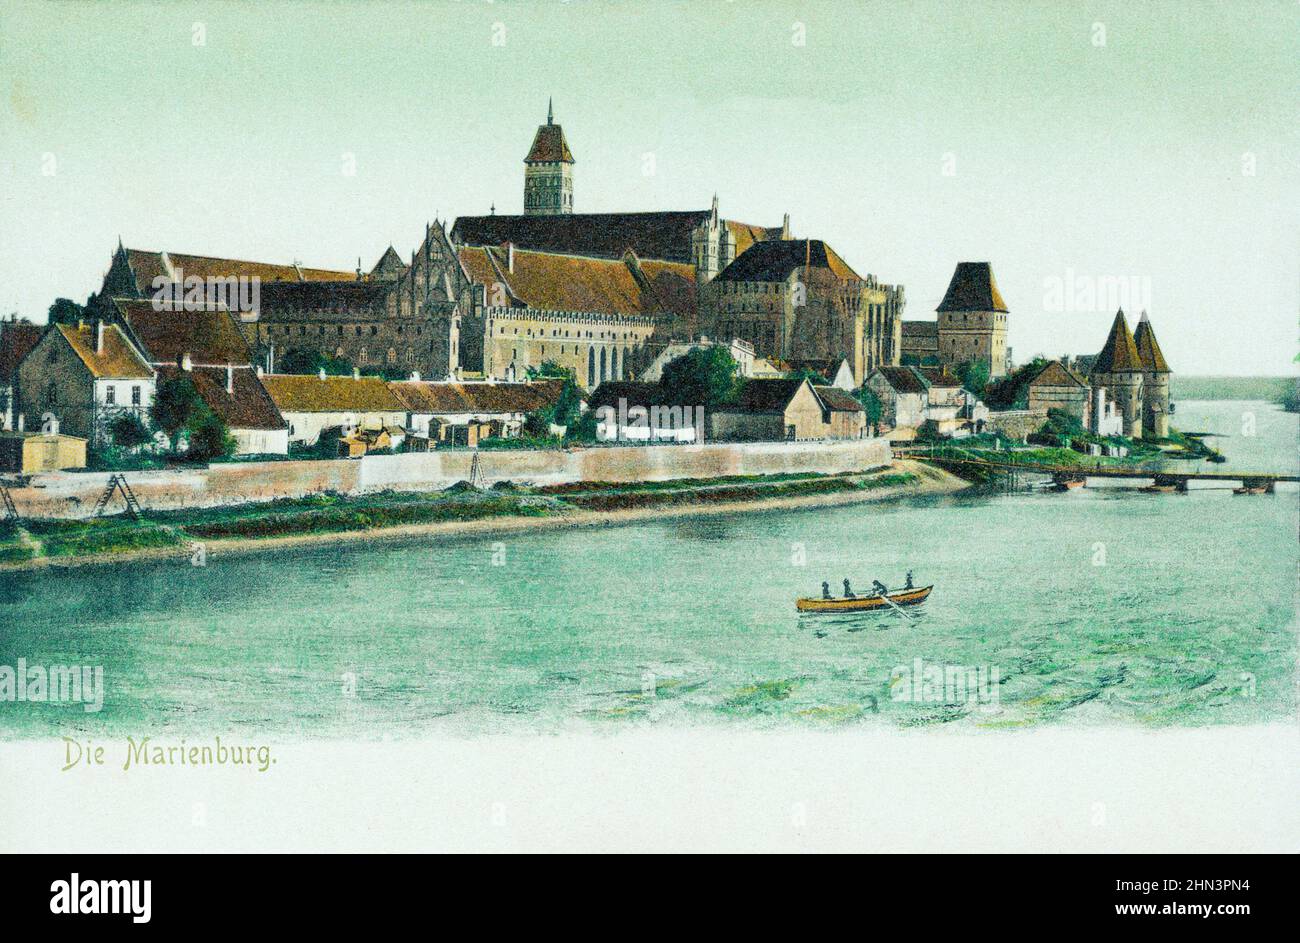 Cartolina tedesca d'epoca: Castello di Marienburg (Castello di Malbork). Germania. 1900-1905 Foto Stock